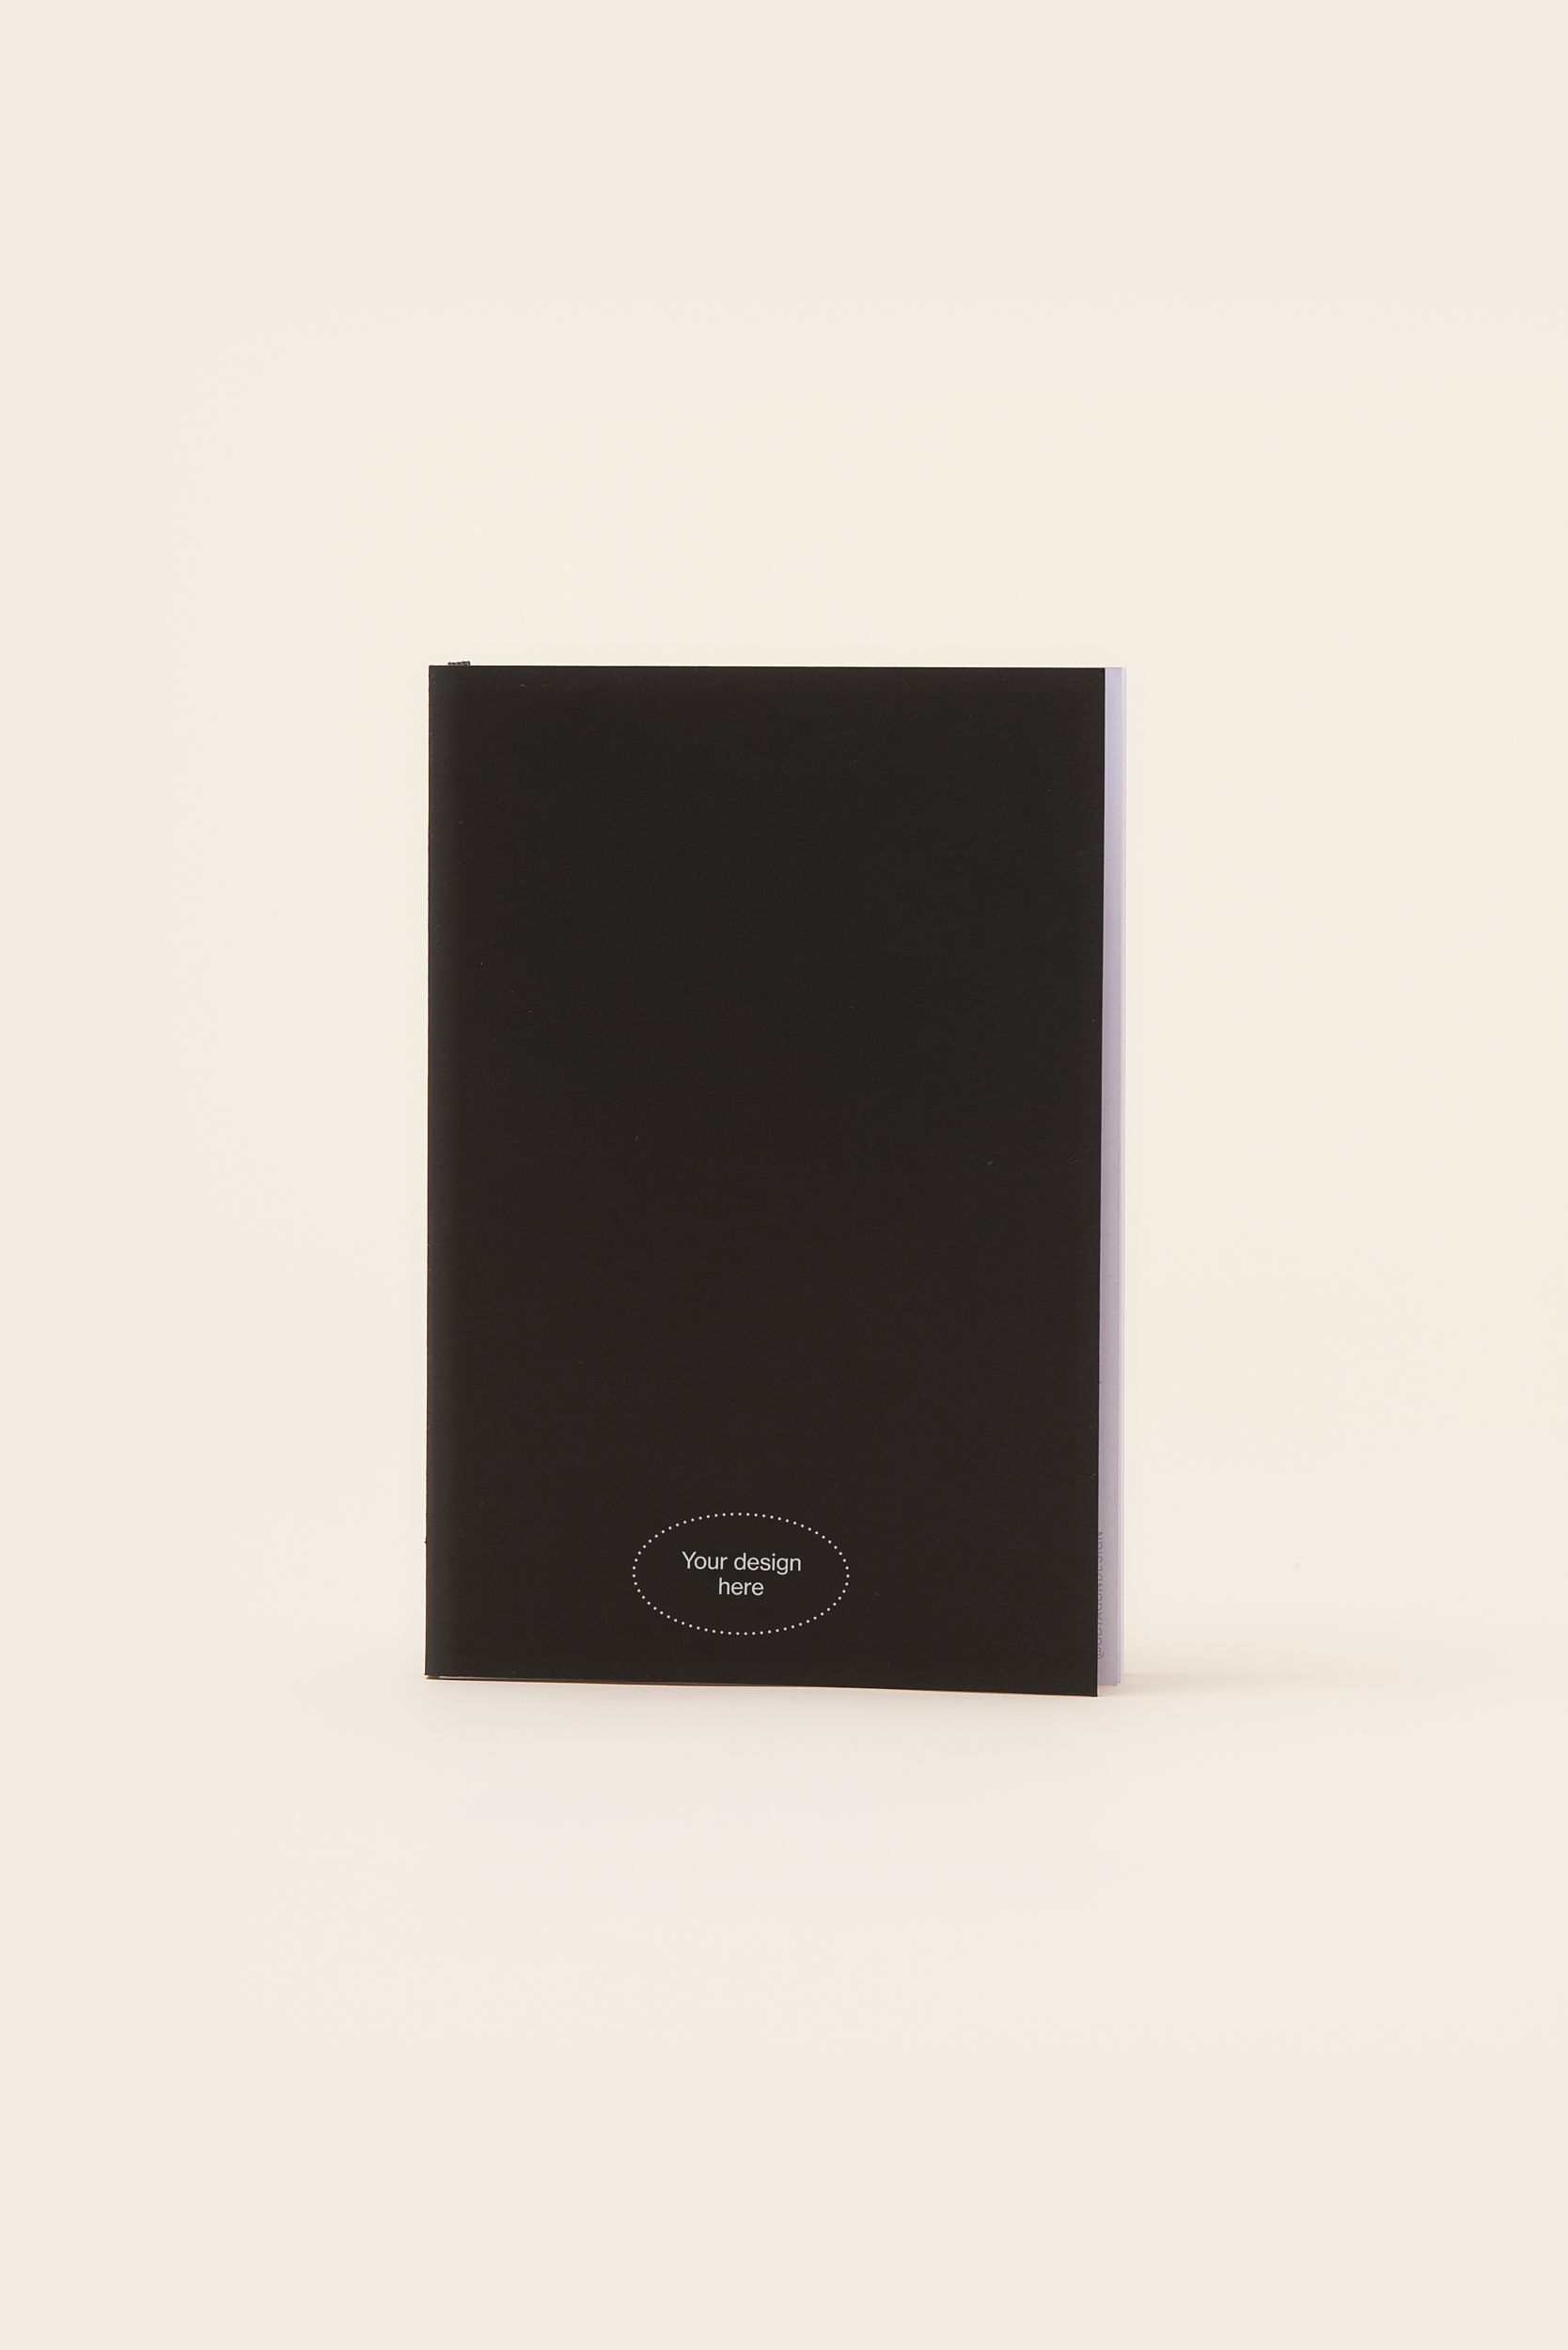 MERCHERY_Flat notebook_black+logo.jpg